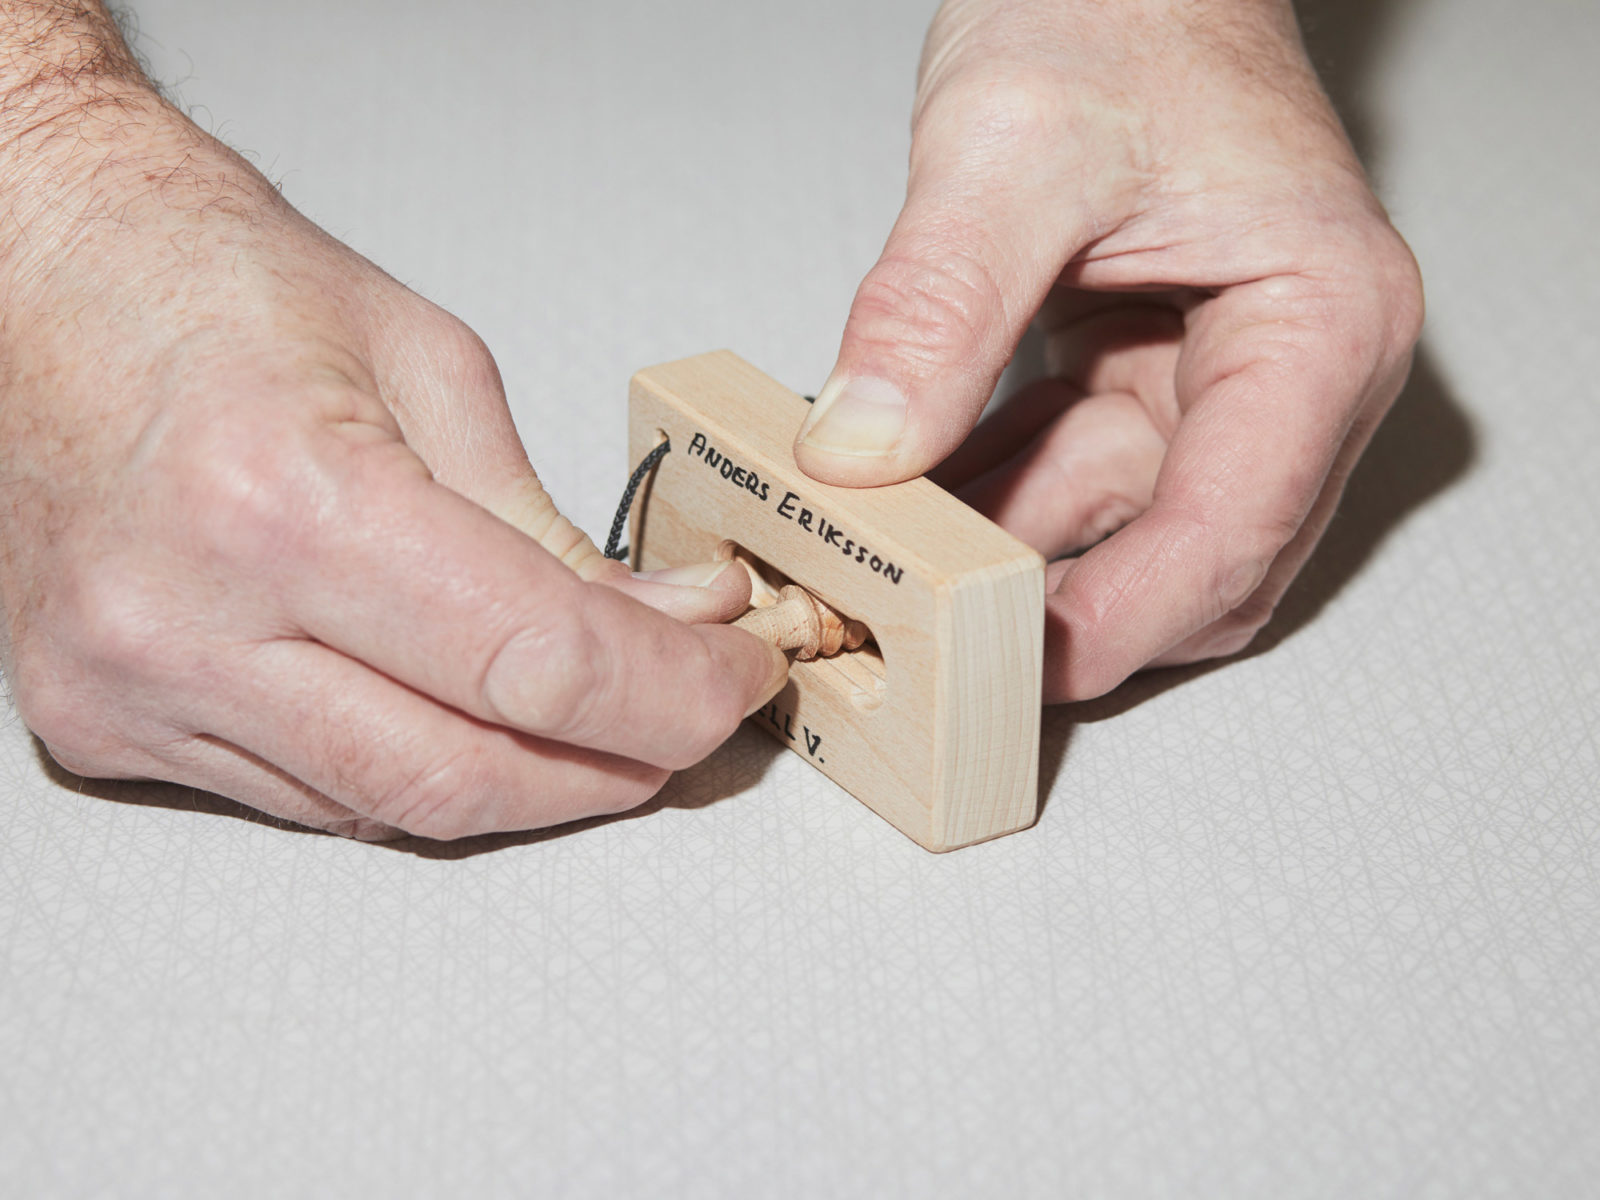 Händer håller ett litet träblock med ett hål i, och en liten träplugg. Anders Eriksson står skrivet på blocket.